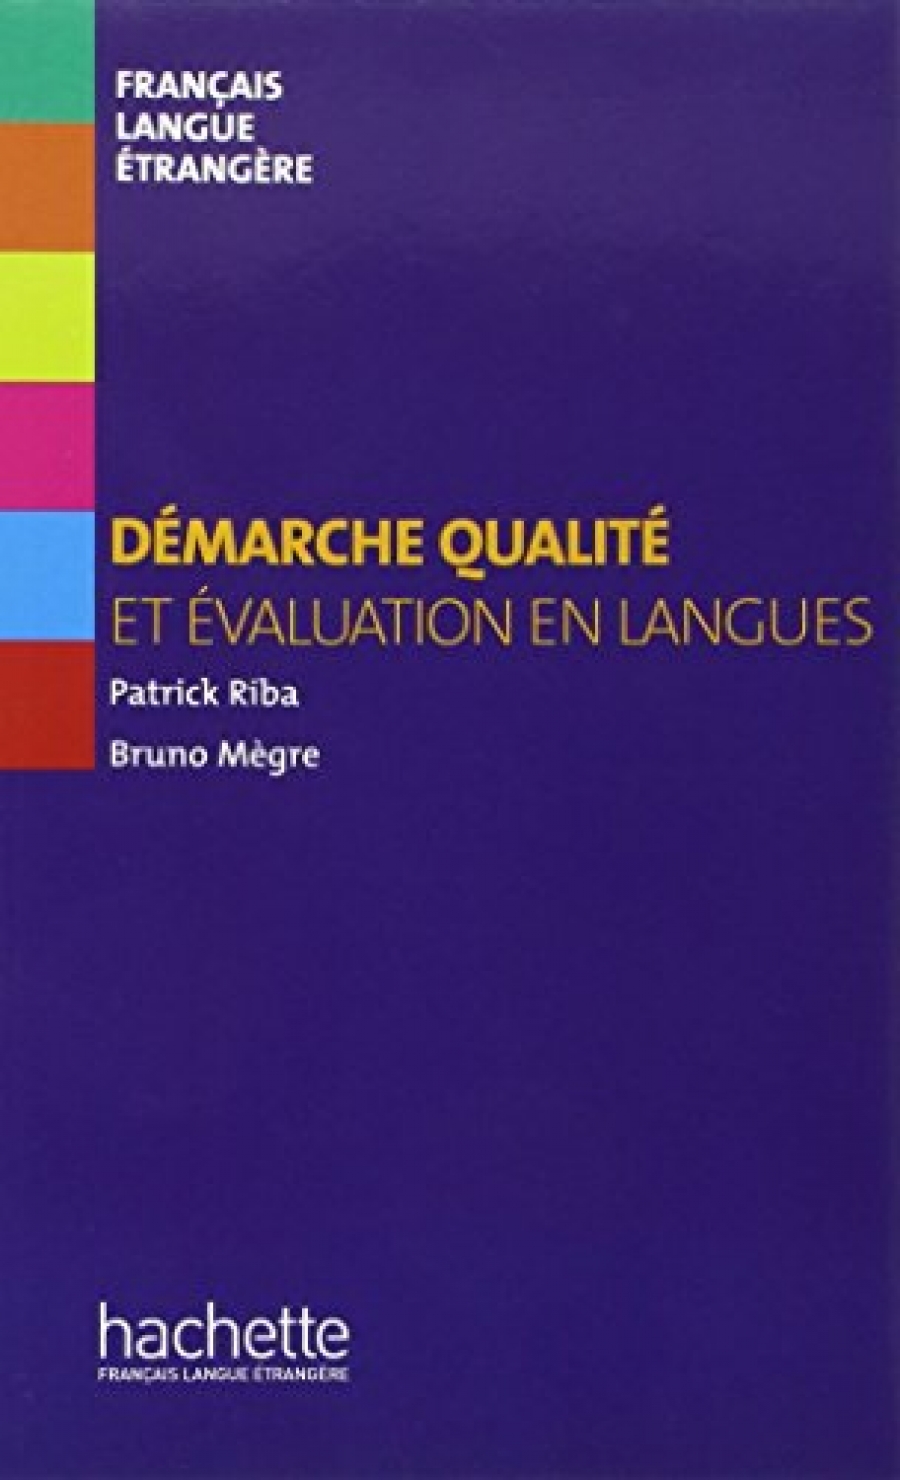 Megre, B. et al. Demarche qualite et evaluation en langues 